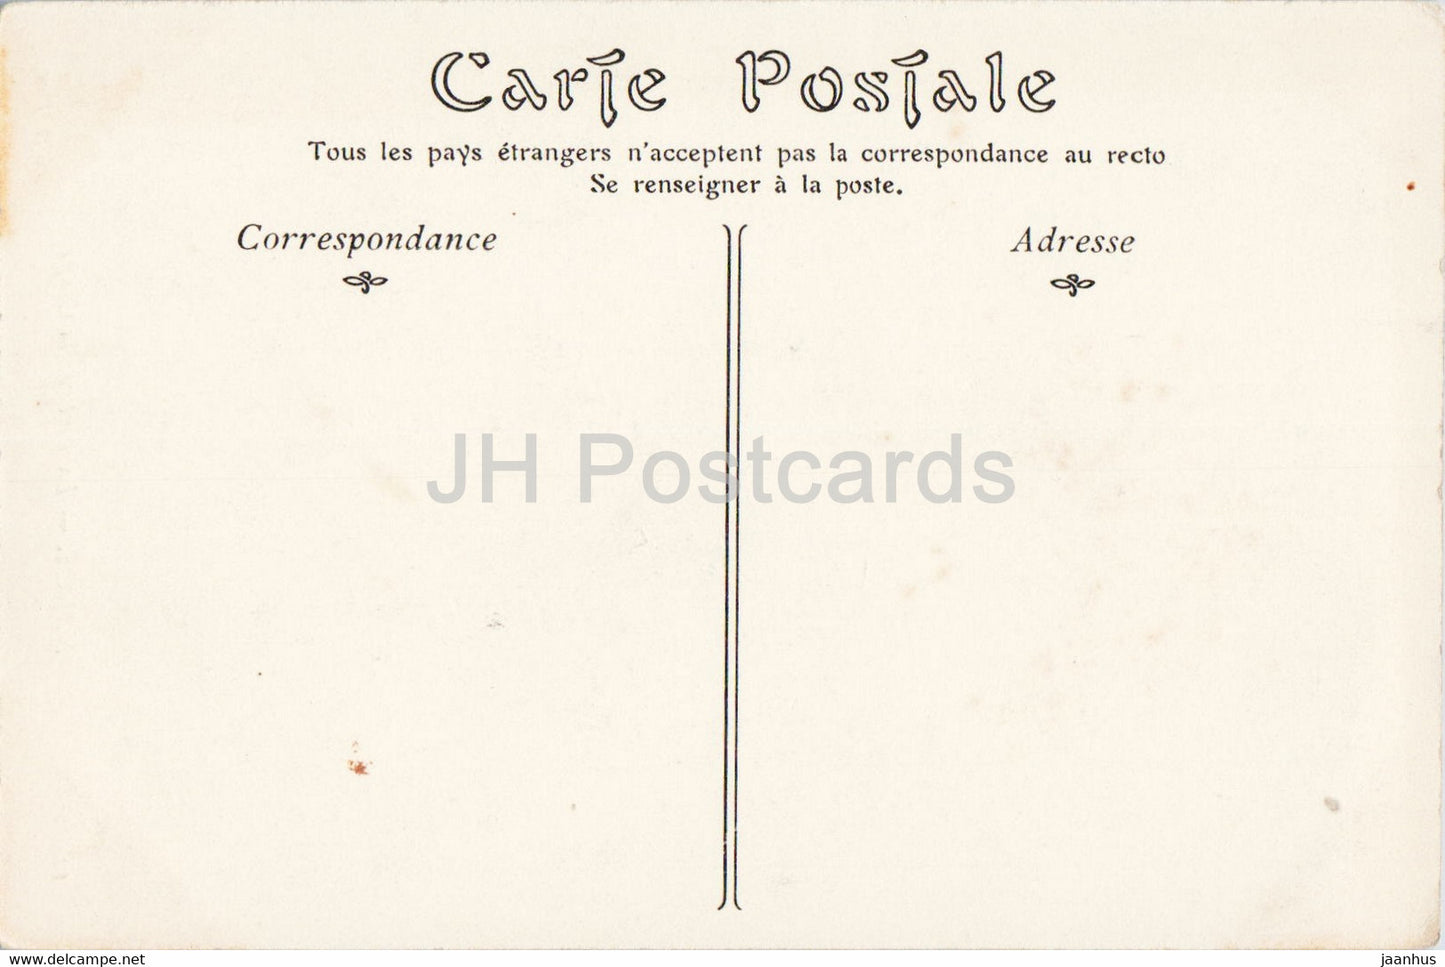 Nancy - La Porte de la Graffe - 12 - old postcard - France - unused